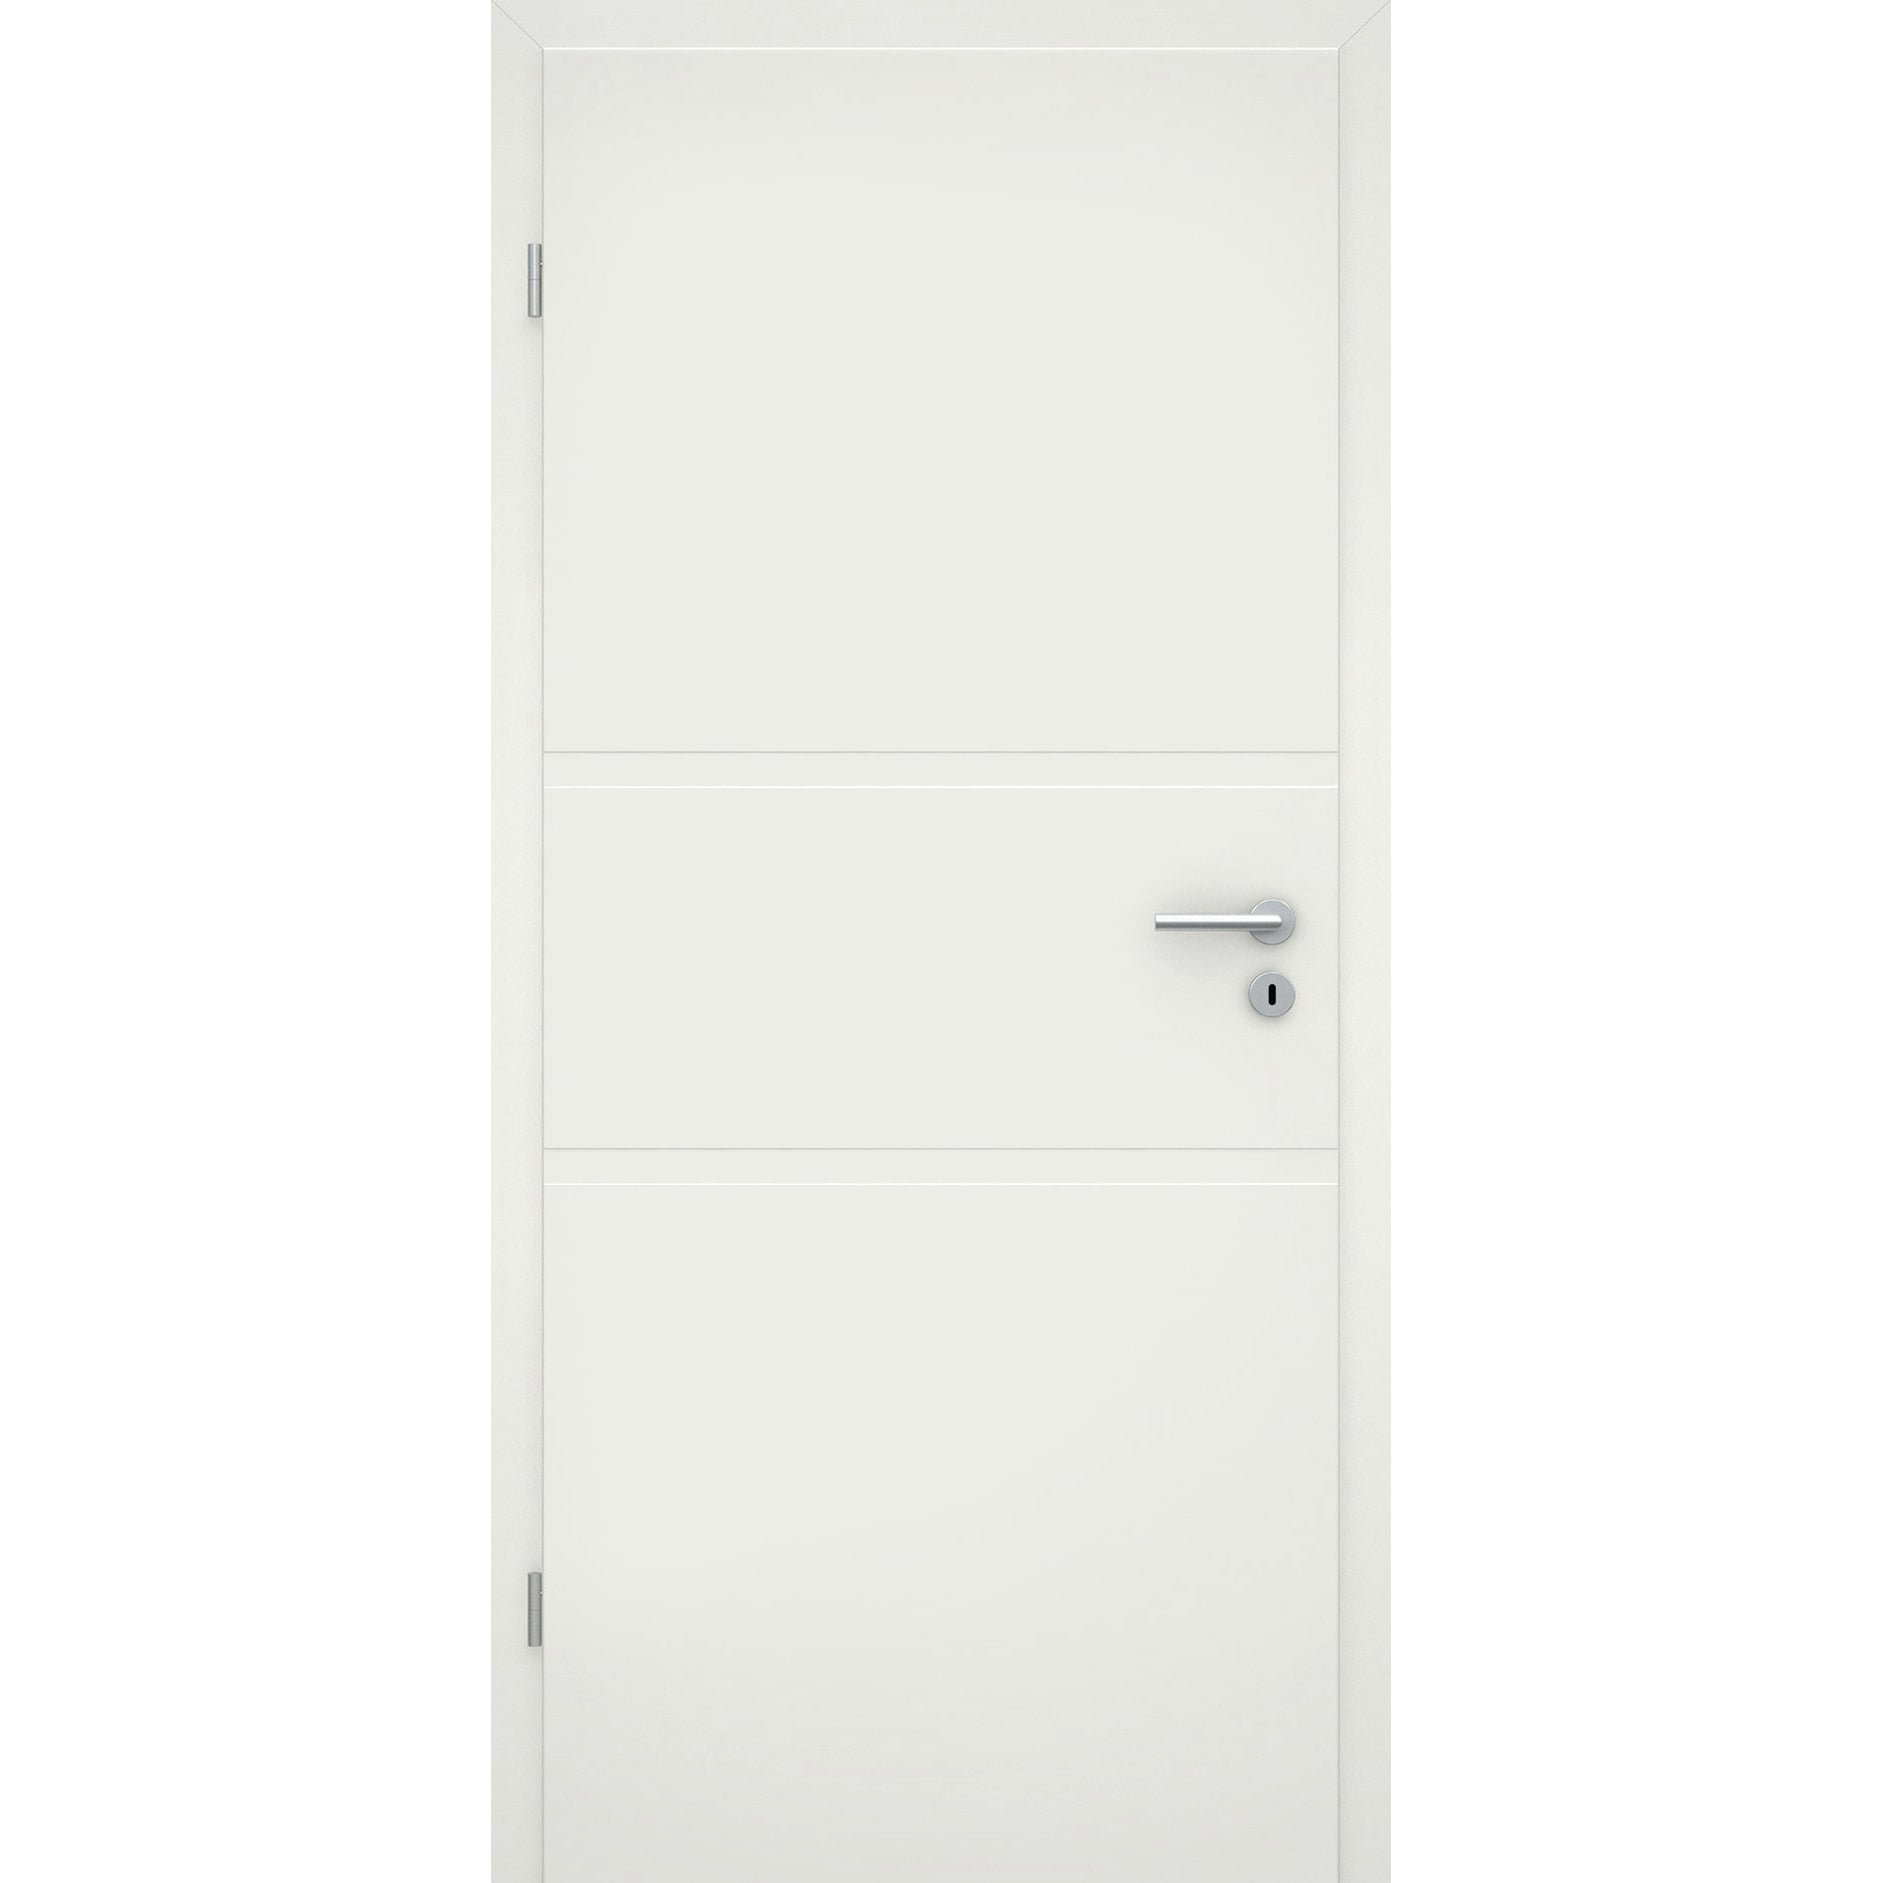 Wohnungseingangstür soft-weiß 2 breite Rillen Eckkante SK2 / KK3 - Modell Designtür QB21